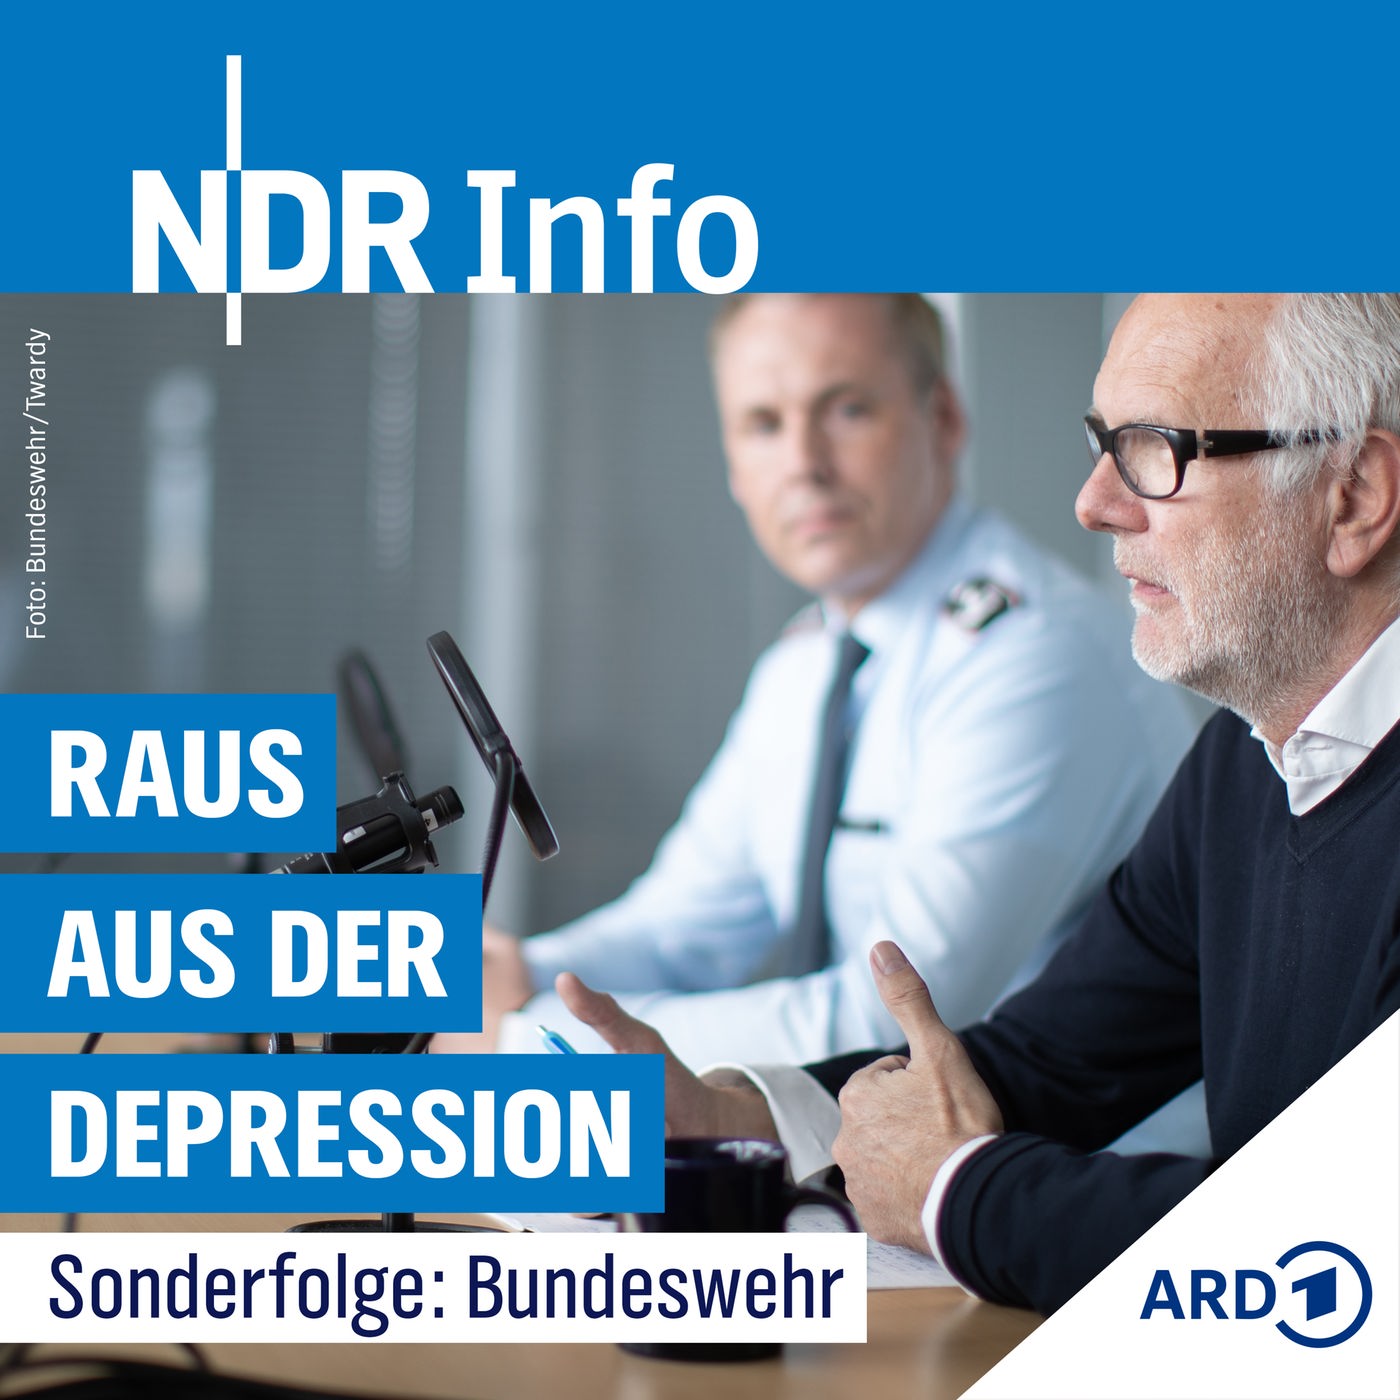 Sonderfolge: Depression bei der Bundeswehr